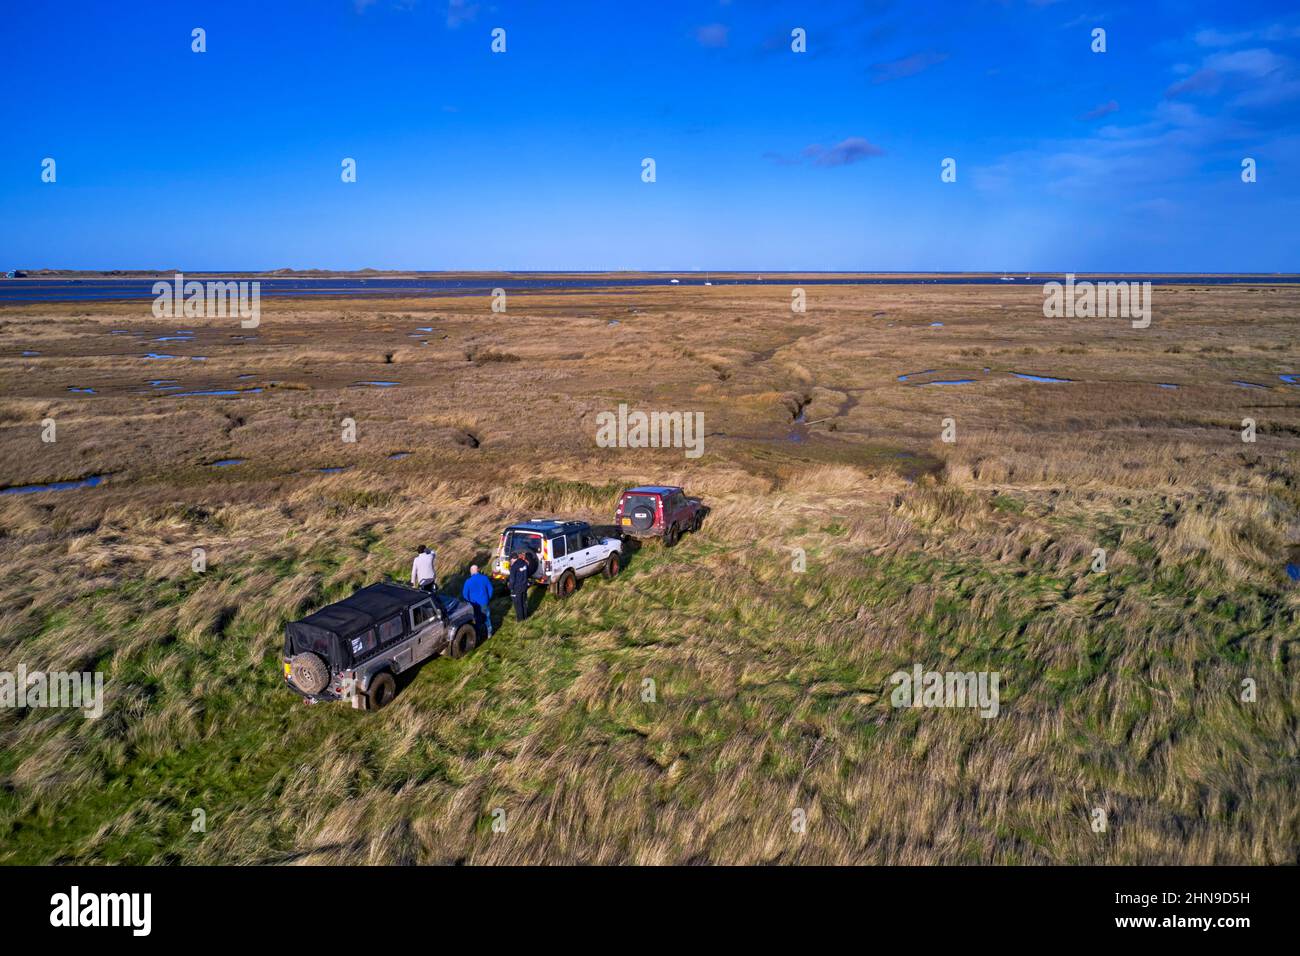 Les Land Rover s'arrêtent là où le passage se termine au bord des marais salants. Morston Greens, Norfolk, Angleterre. Banque D'Images